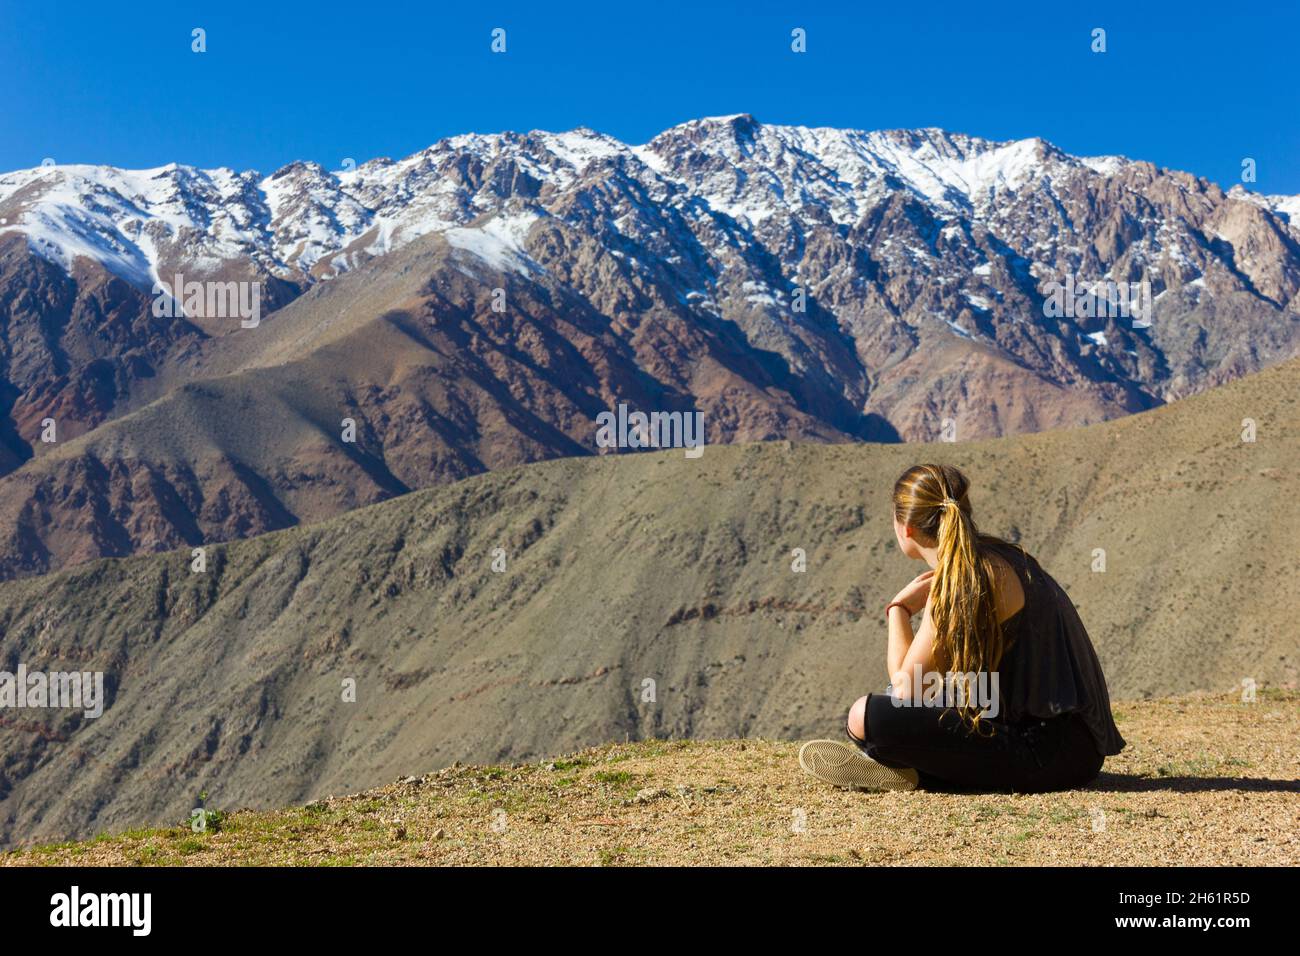 Junges blondes Mädchen, das auf einem kargen Boden sitzt und die schneebedeckten Berge der Anden unter blauem Himmel im Elqui-Tal, Chile, anschaut Stockfoto